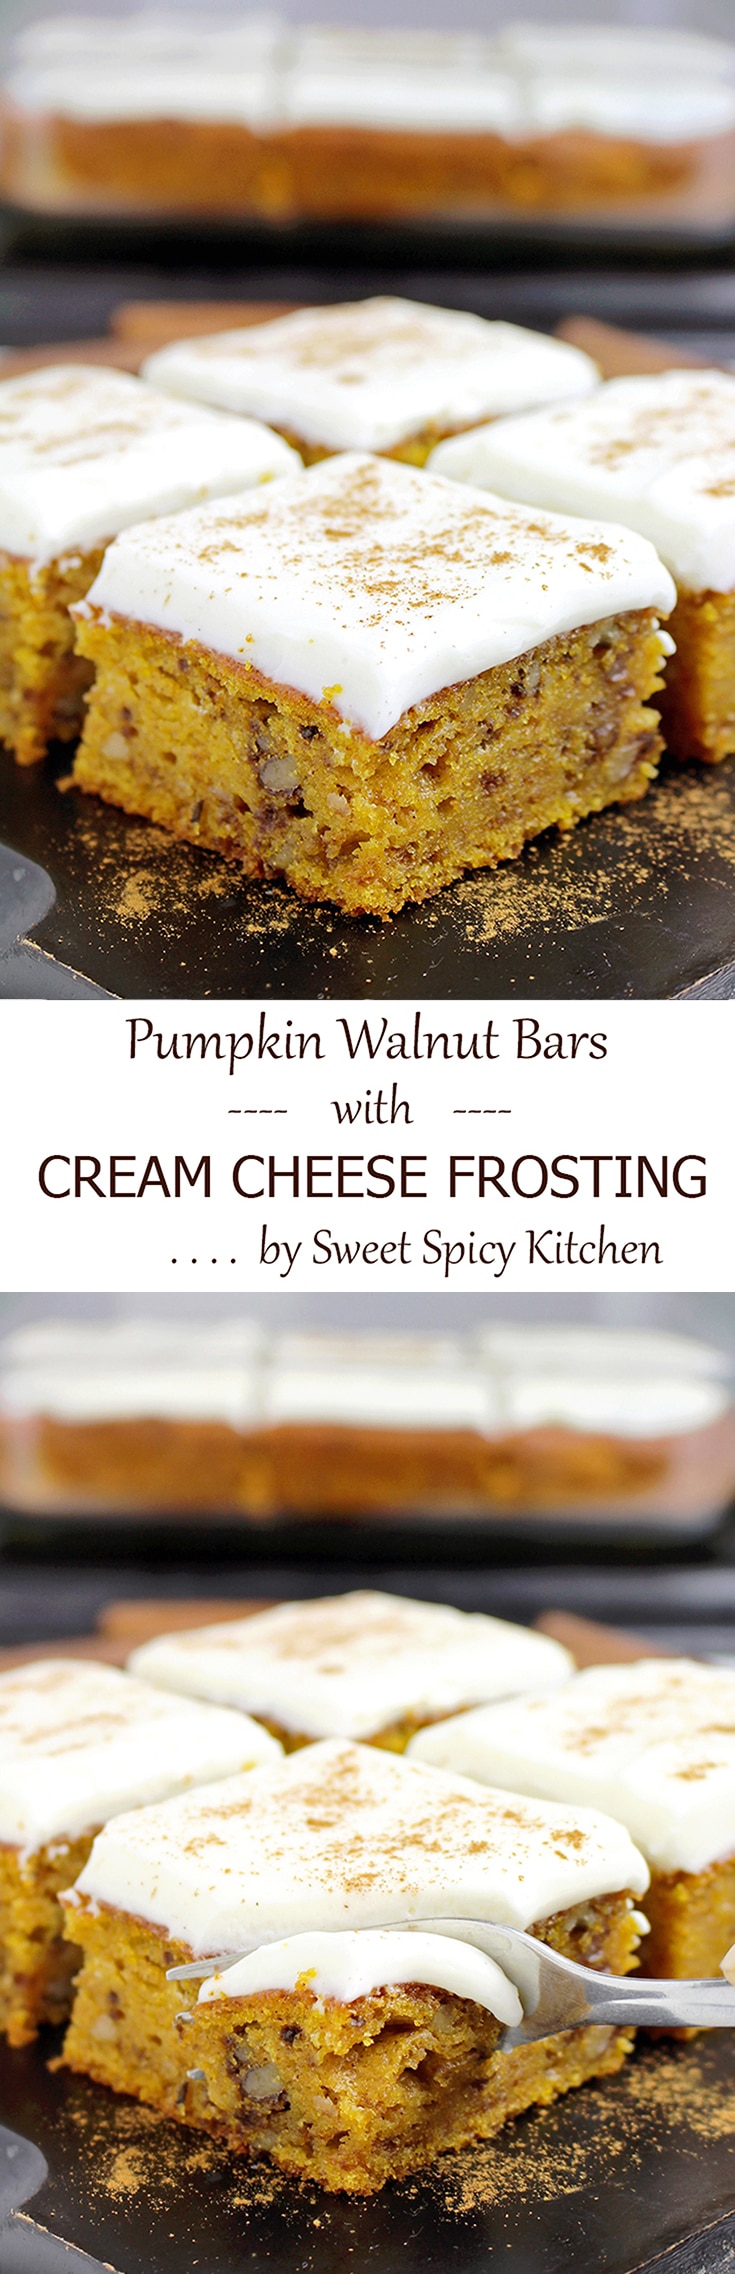 Aaaand another pumpkin dessert – Pumpkin Walnut Bars with Cream Cheese Frosting.